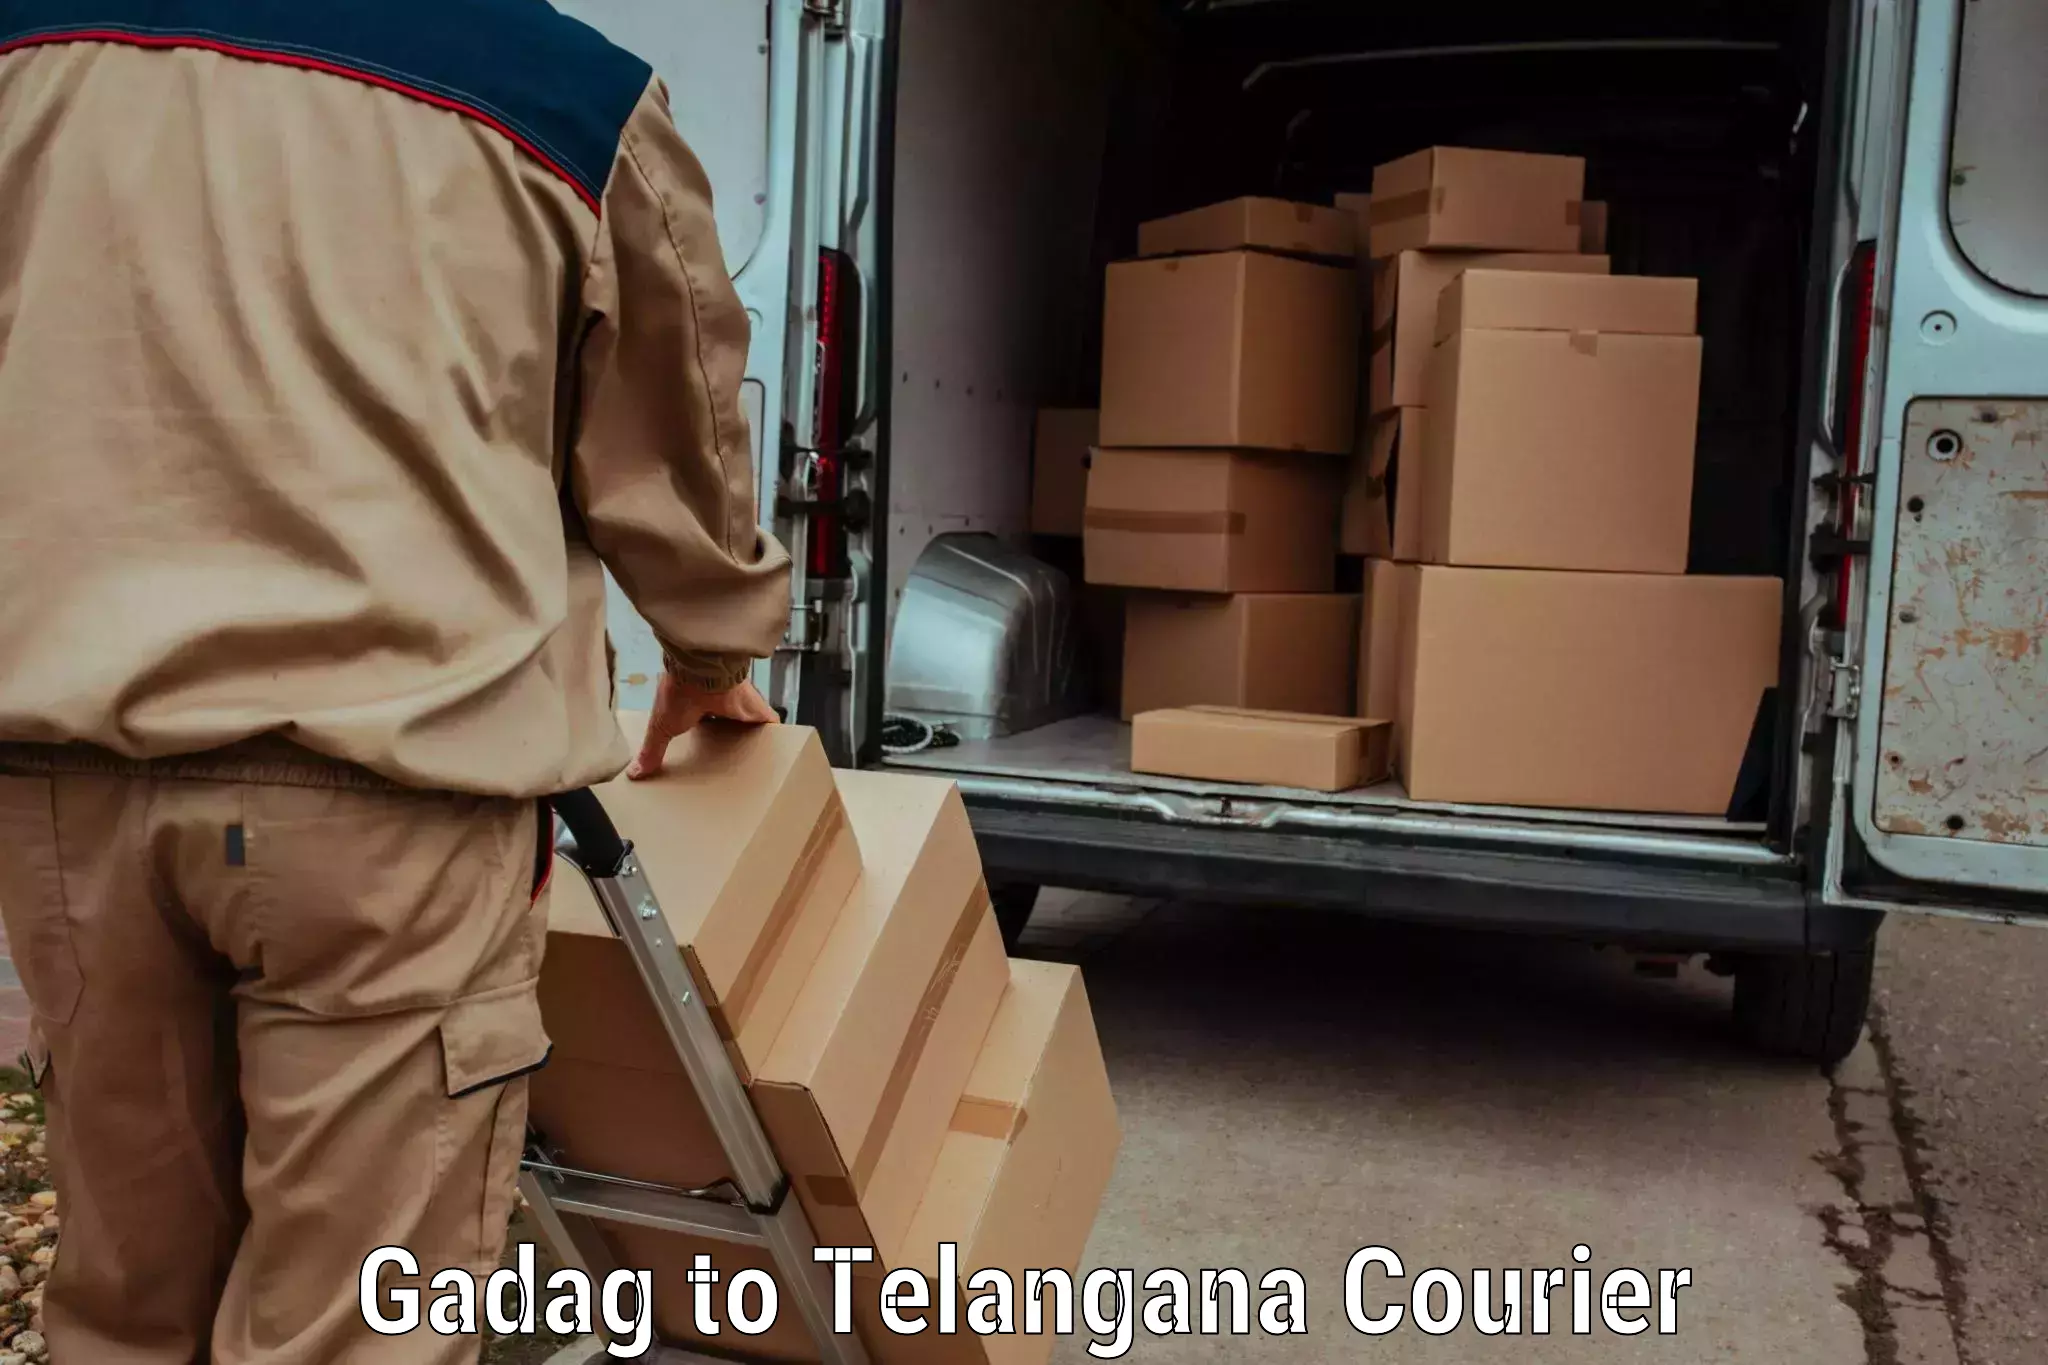 Bulk shipping discounts Gadag to Miryalaguda